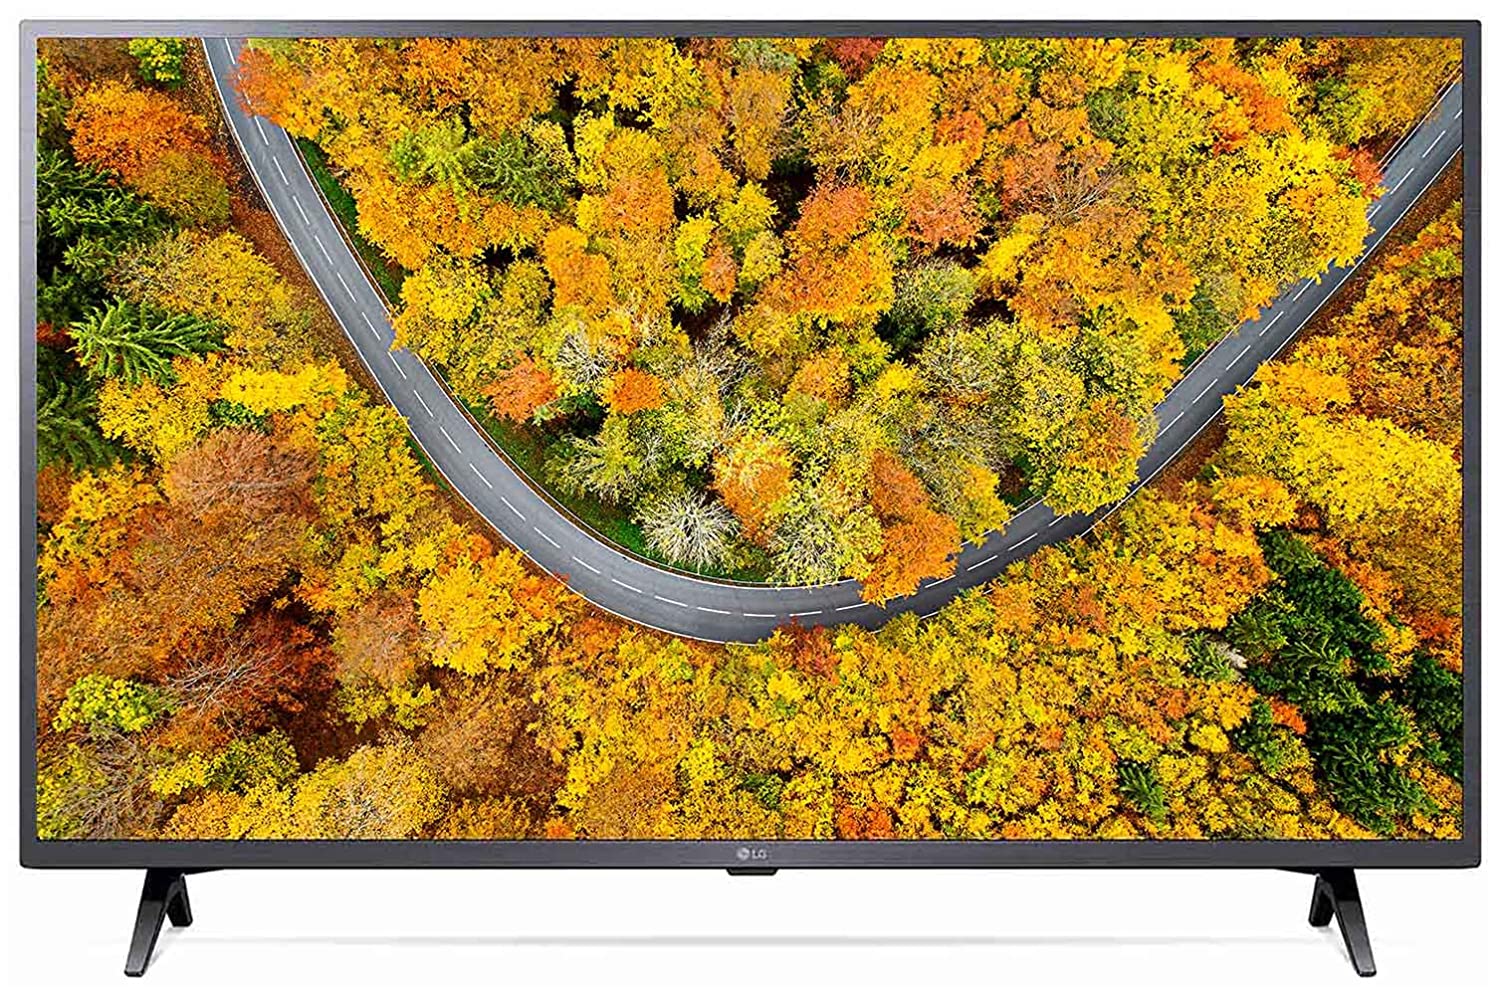 LG 43 inches 4K Ultra HD Smart LED TV